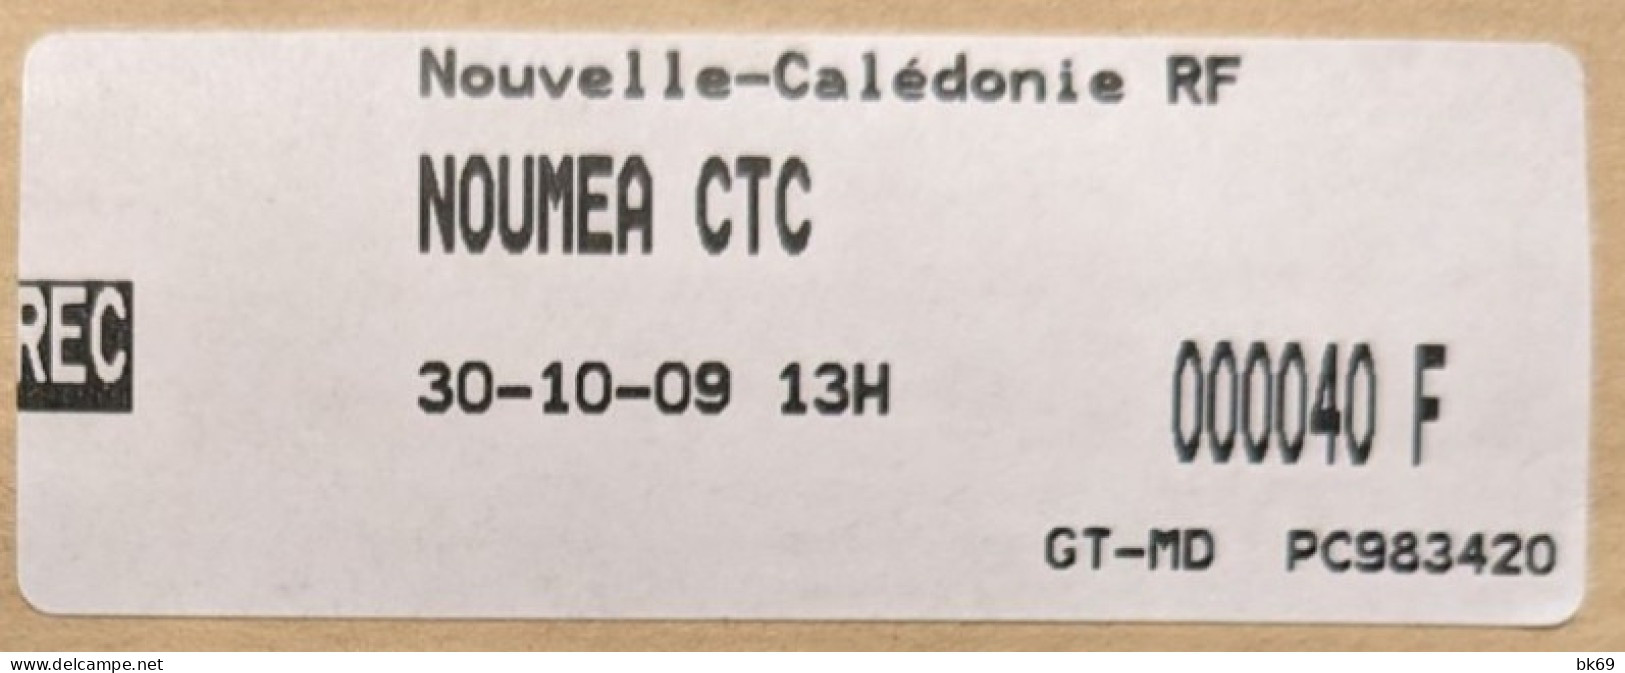 Nouvelle Calédonie Recommandé Nouméa -France Faciale 760F CFA Dont Le Casse Téte Tétons - Used Stamps